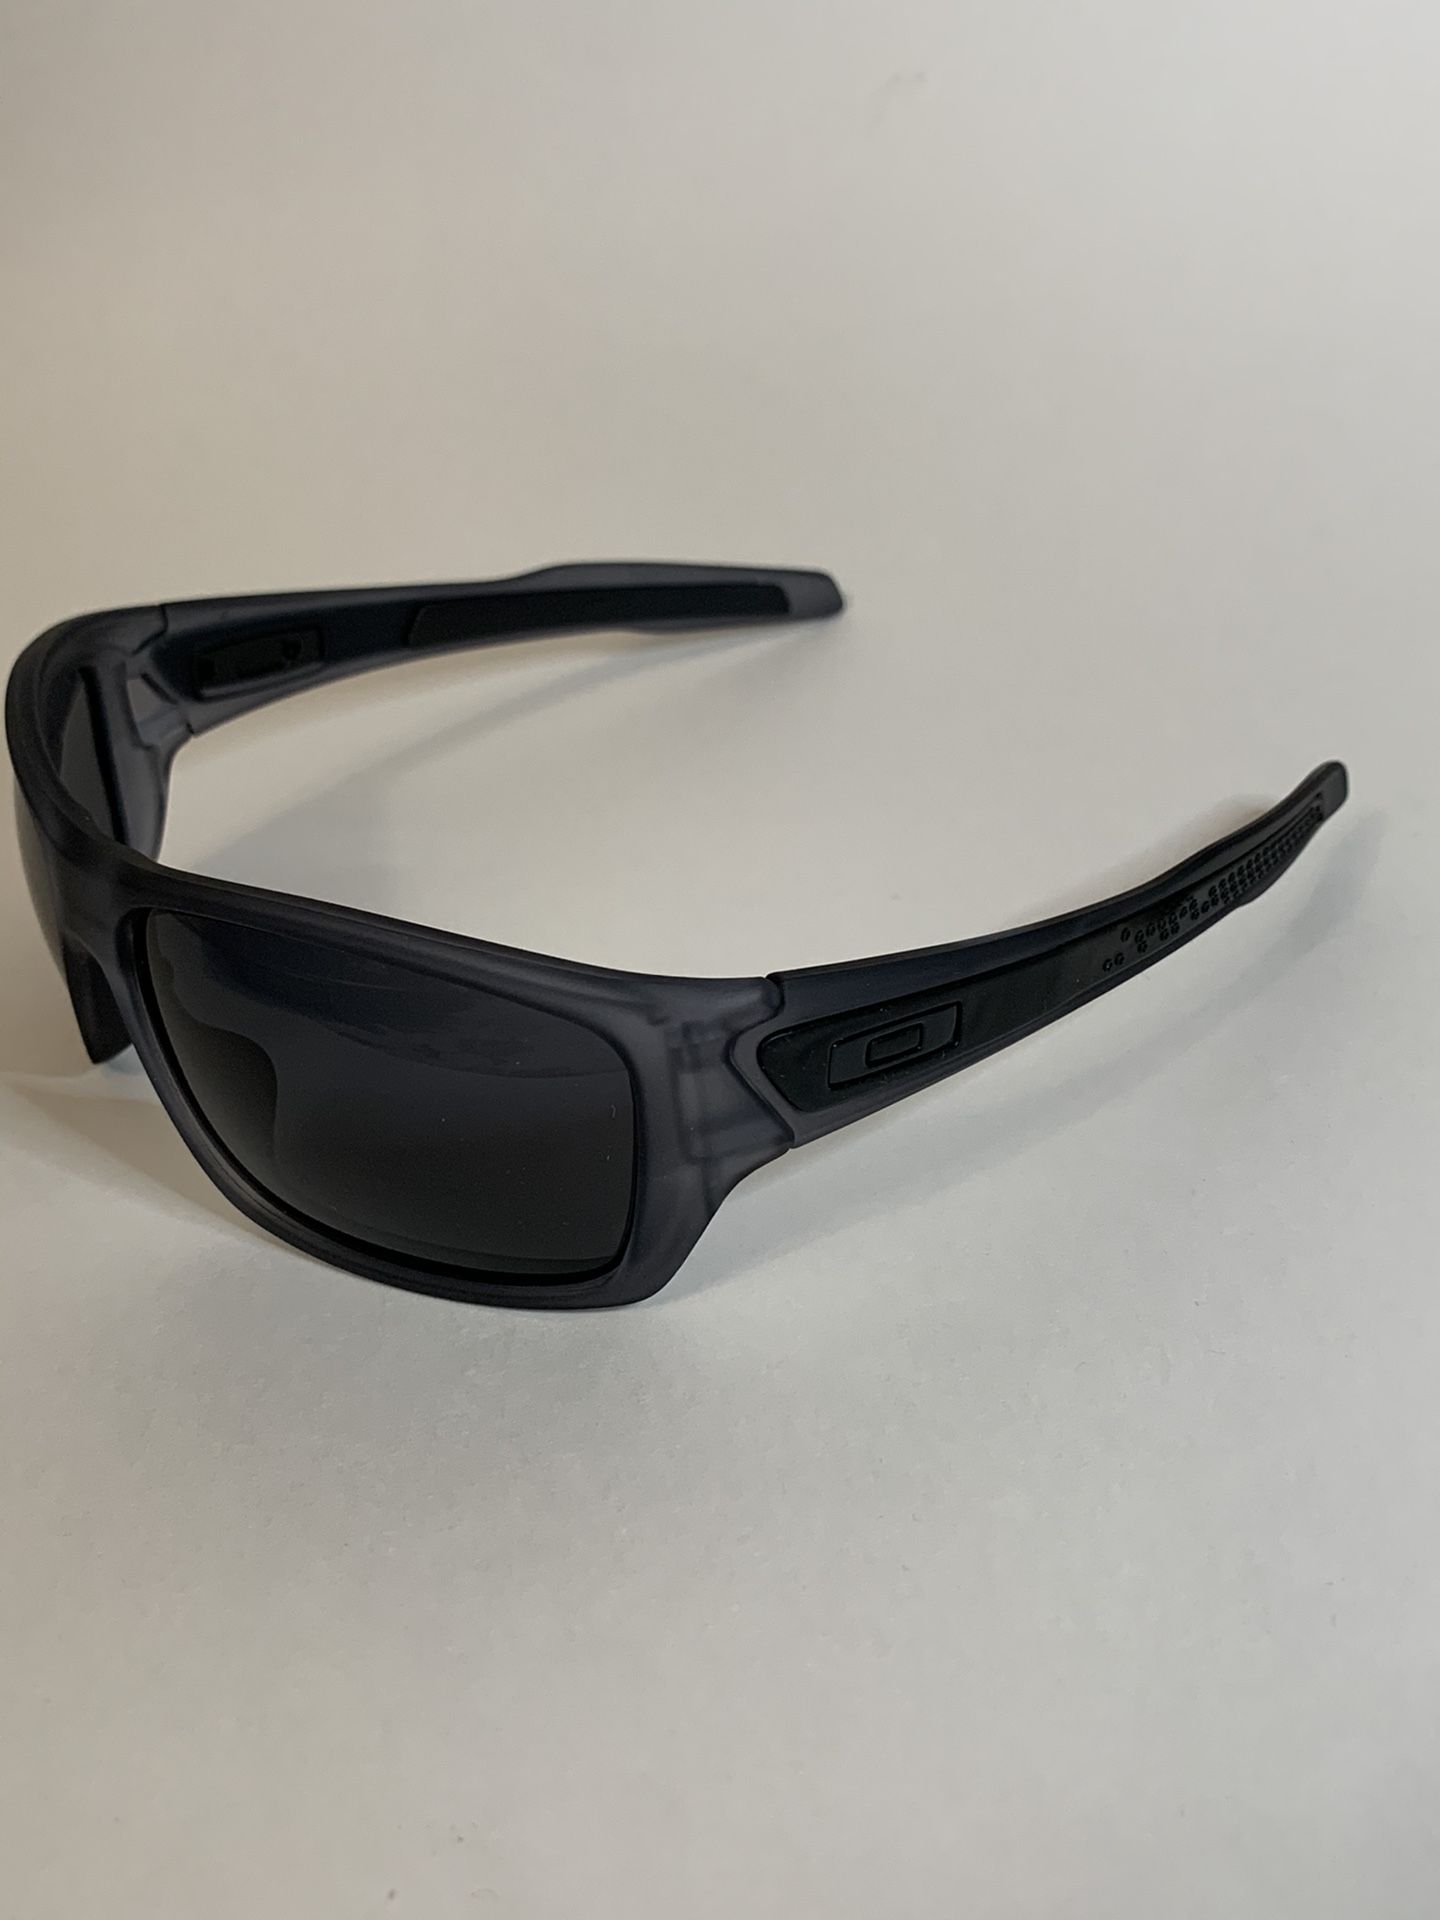 New Oakley turbine style sunglasses No scratches No polarized Pick up Costa Mesa